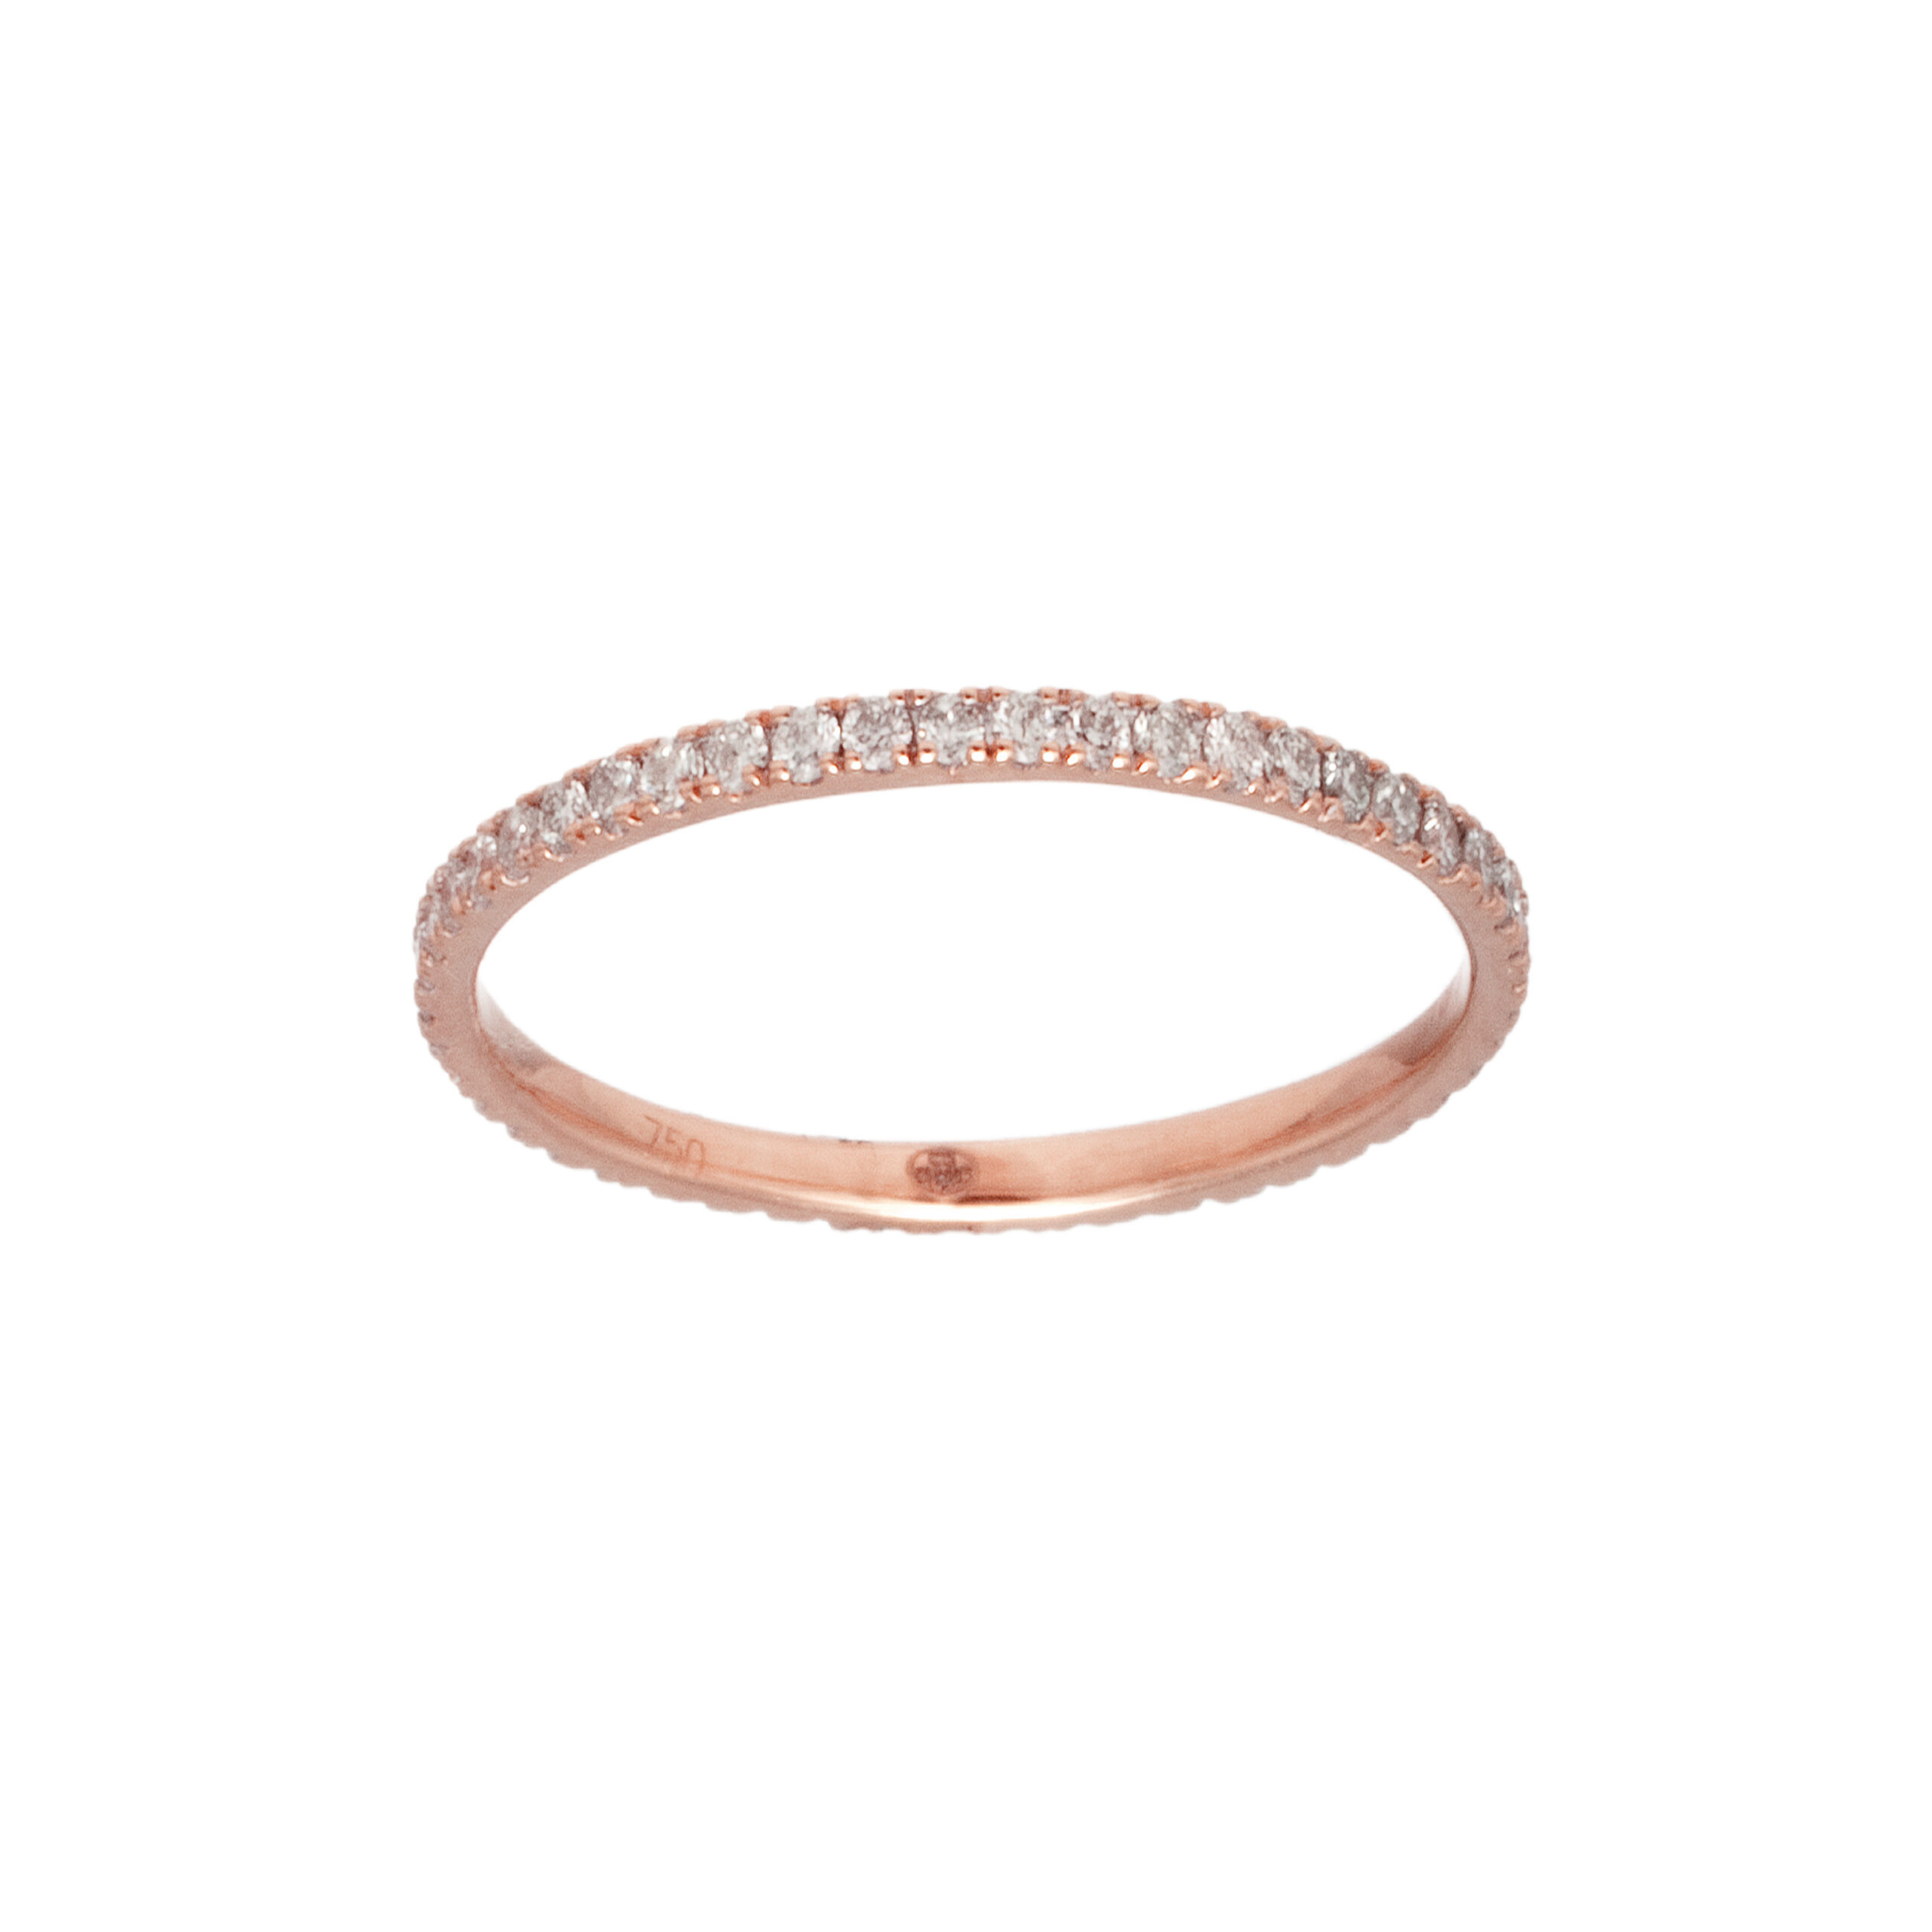 Bague alliance de fiançailles en or rose et diamants pour femme, bijou de joaillerie fine fabriqué en France est un cadeau idéal.